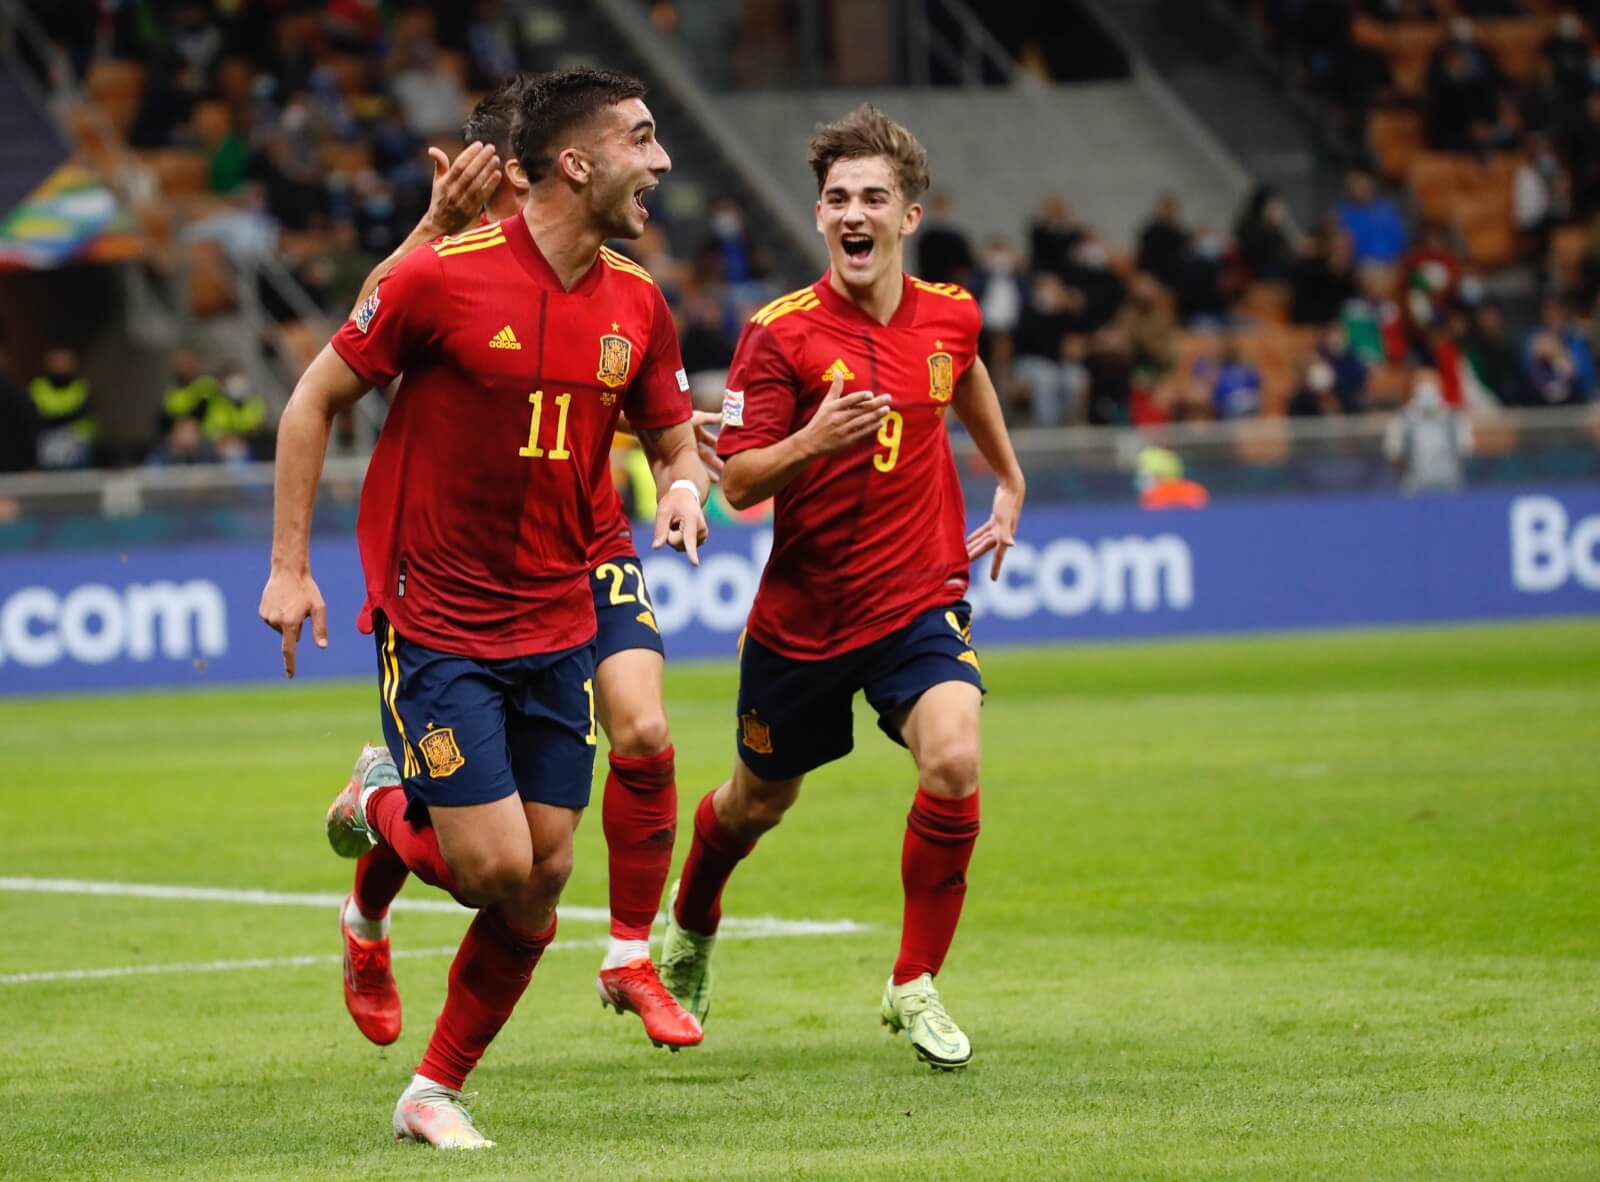 Իսպանիան հիասքանչ խաղով հաղթեց Իտալիային` ուղևորվելով ԱԼ-ի եզրափակիչ🎥